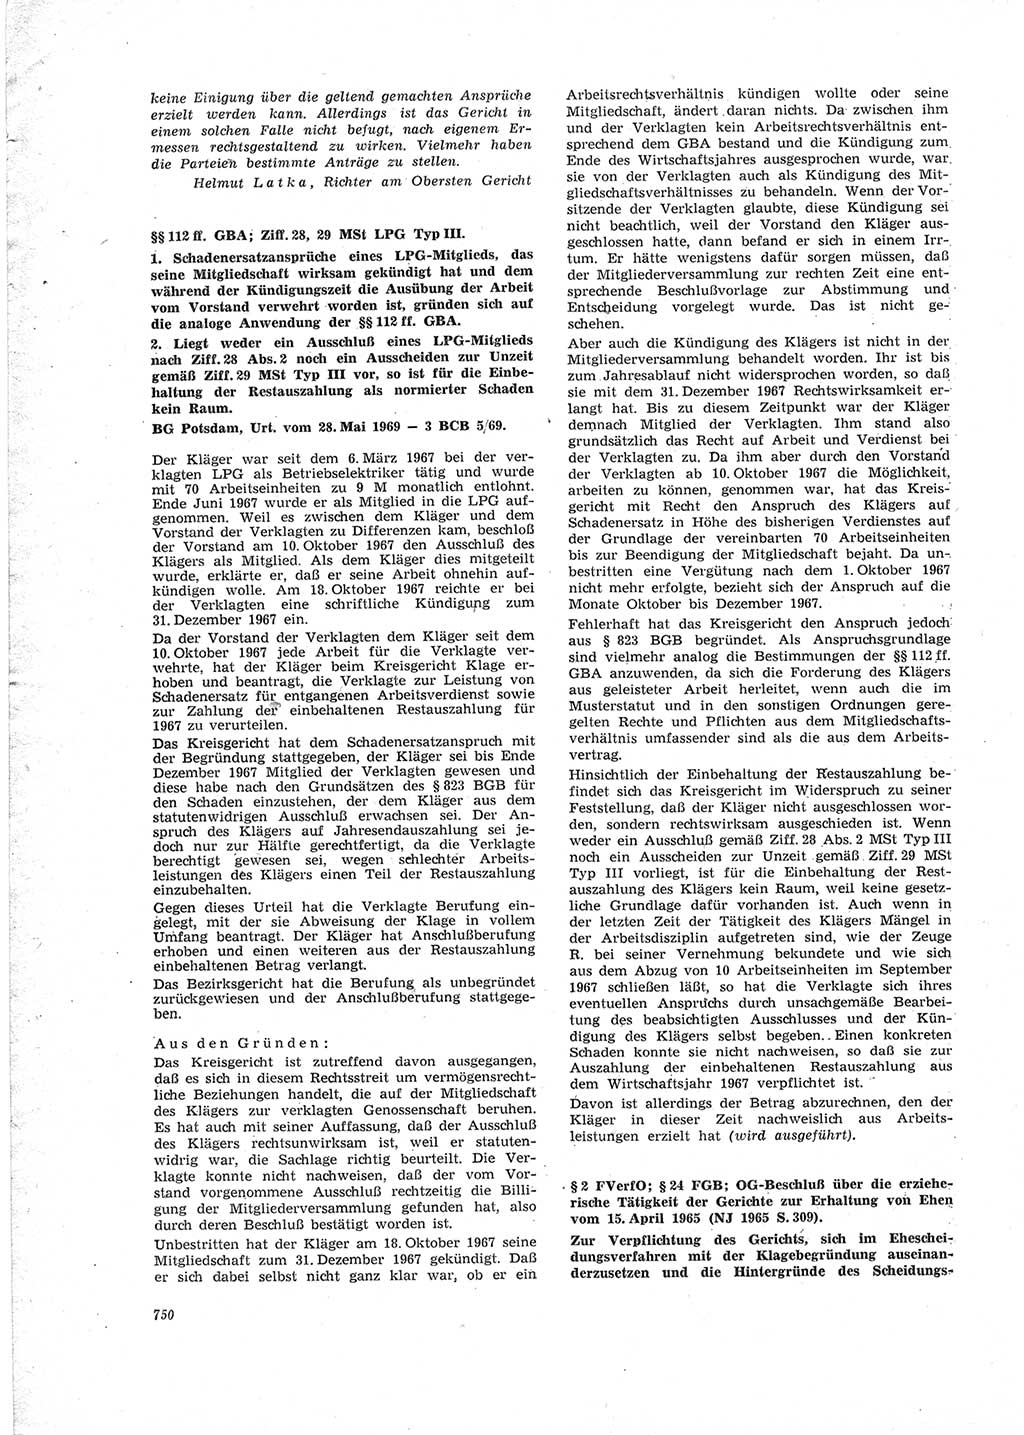 Neue Justiz (NJ), Zeitschrift für Recht und Rechtswissenschaft [Deutsche Demokratische Republik (DDR)], 23. Jahrgang 1969, Seite 750 (NJ DDR 1969, S. 750)